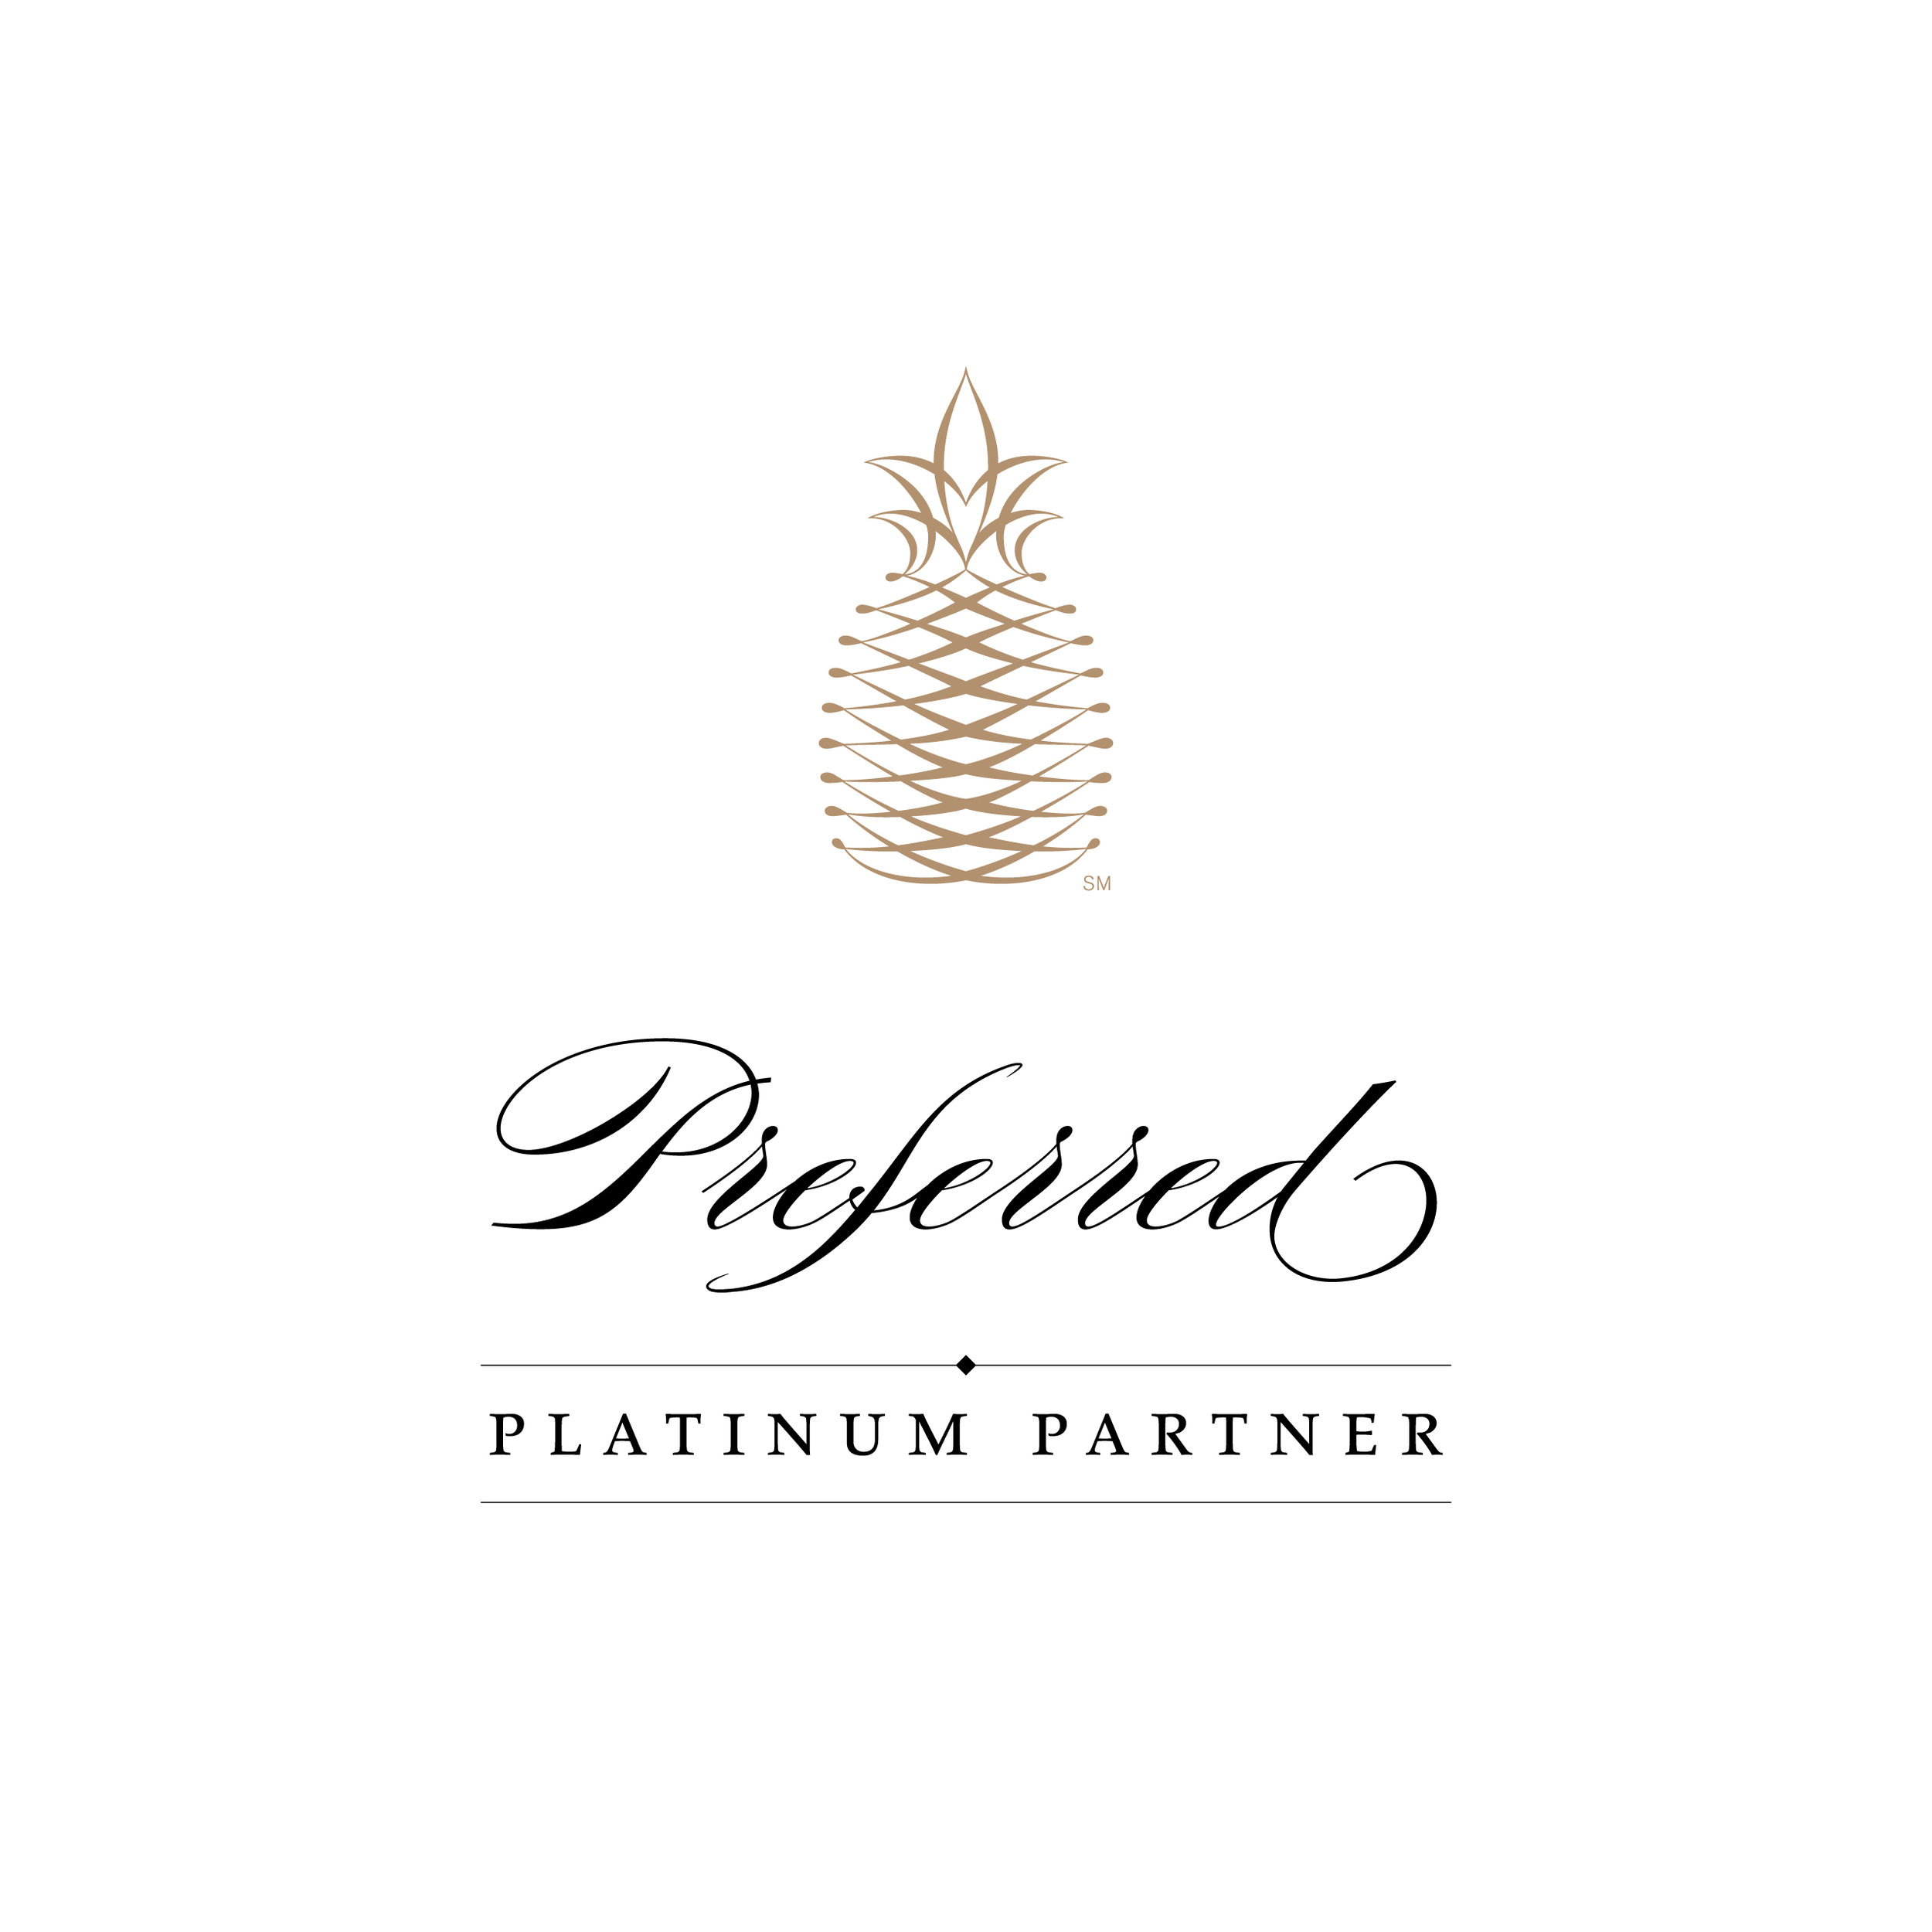 16_143_Preferred Platinum Partner_Large_FNL.jpg